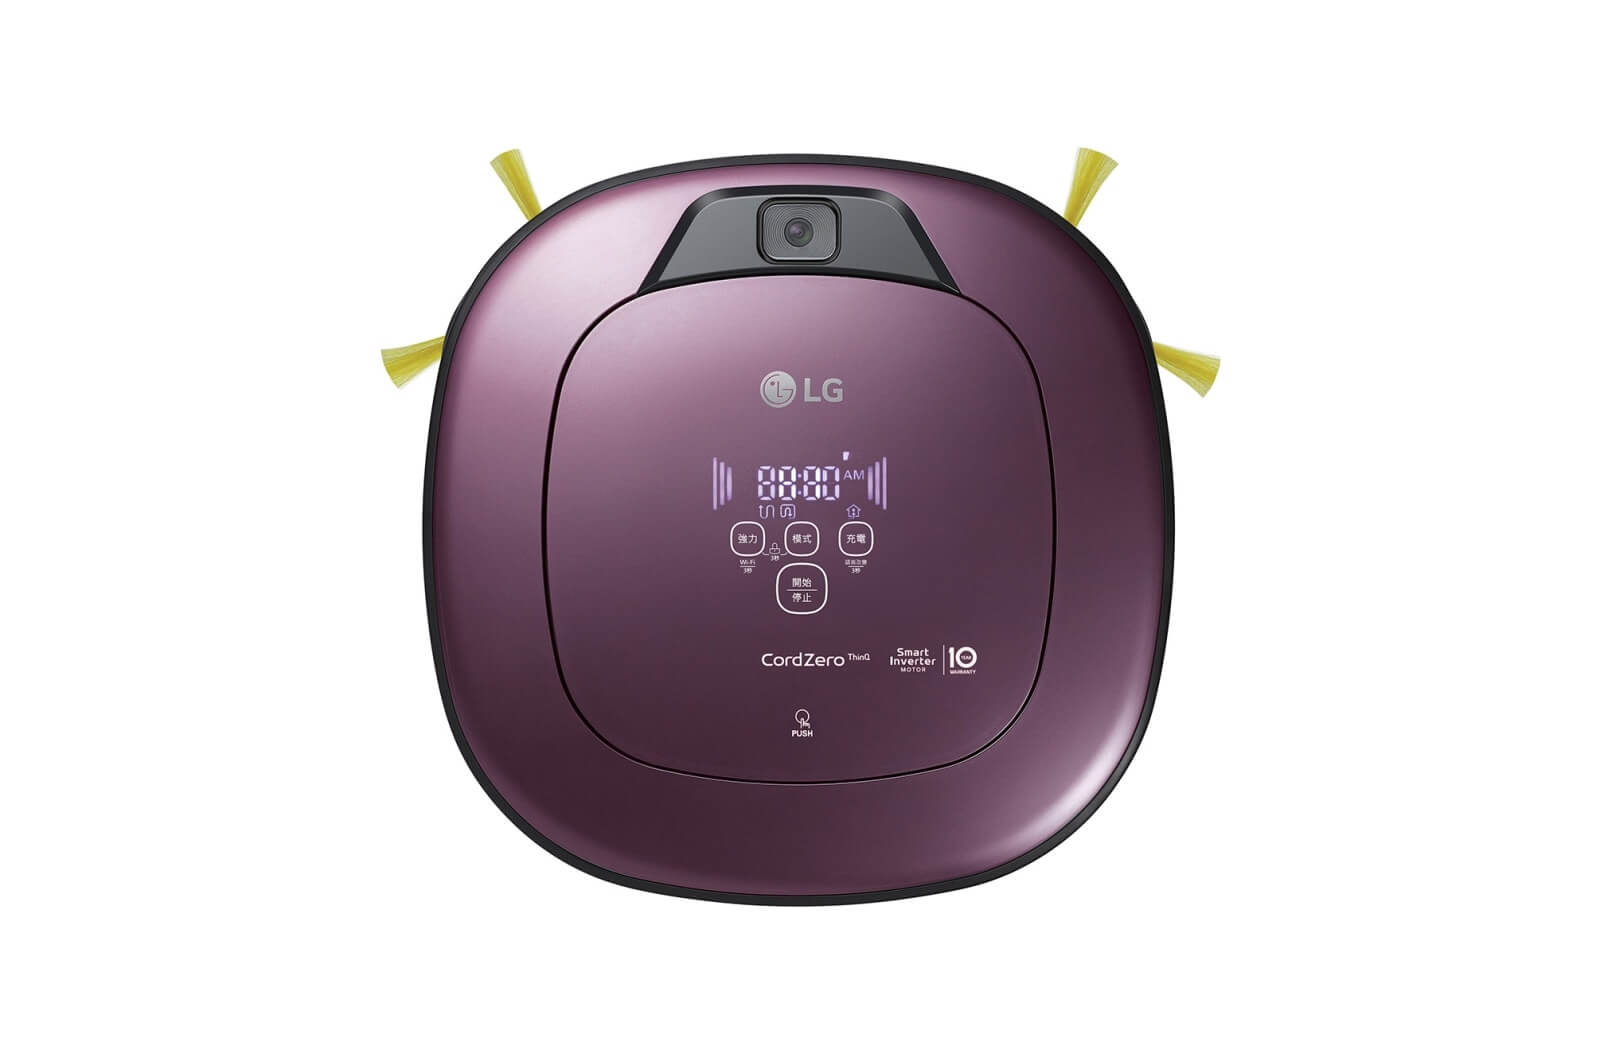 LG樂金-CordZero™ WiFi濕拖清潔機器人-雙眼